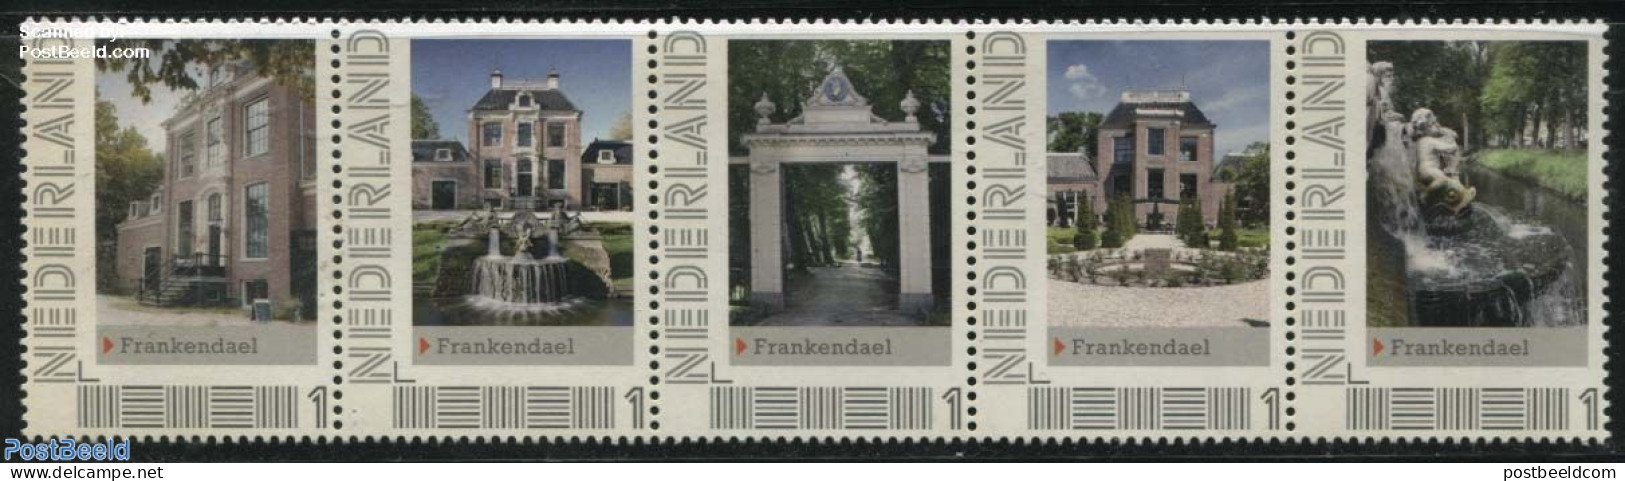 Netherlands - Personal Stamps TNT/PNL 2012 Frankendael 5v [::::], Mint NH, Art - Castles & Fortifications - Castles